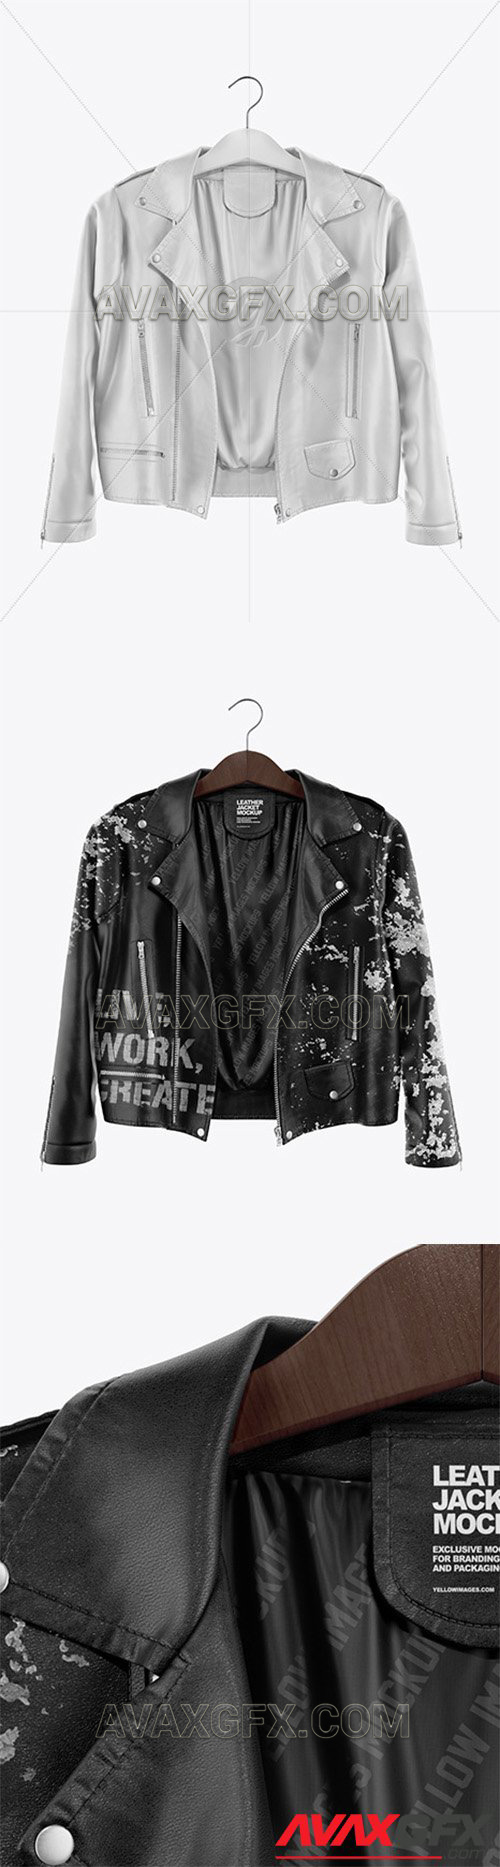 Leather Jacket Mockup 59591